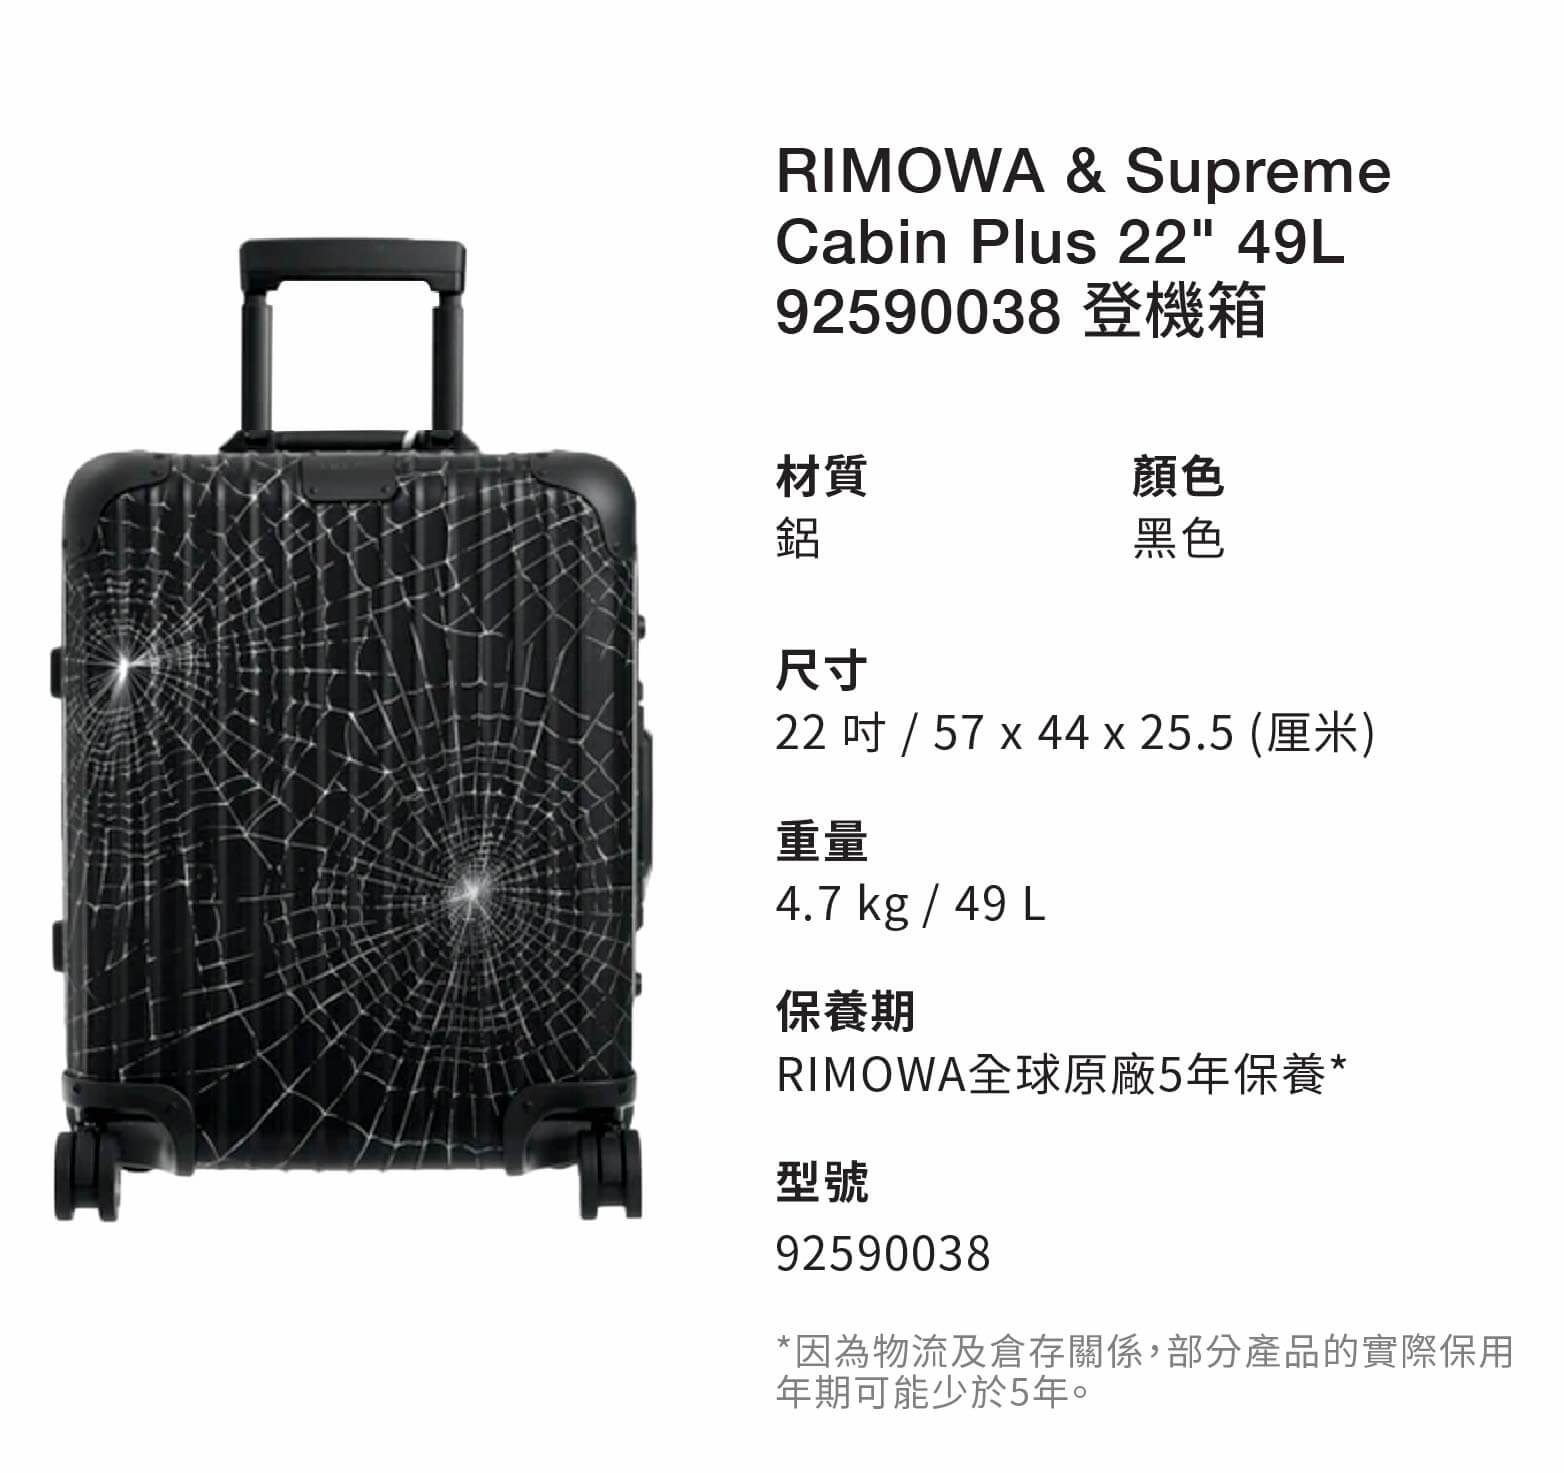 RIMOWA & Supreme Cabin Plus 22